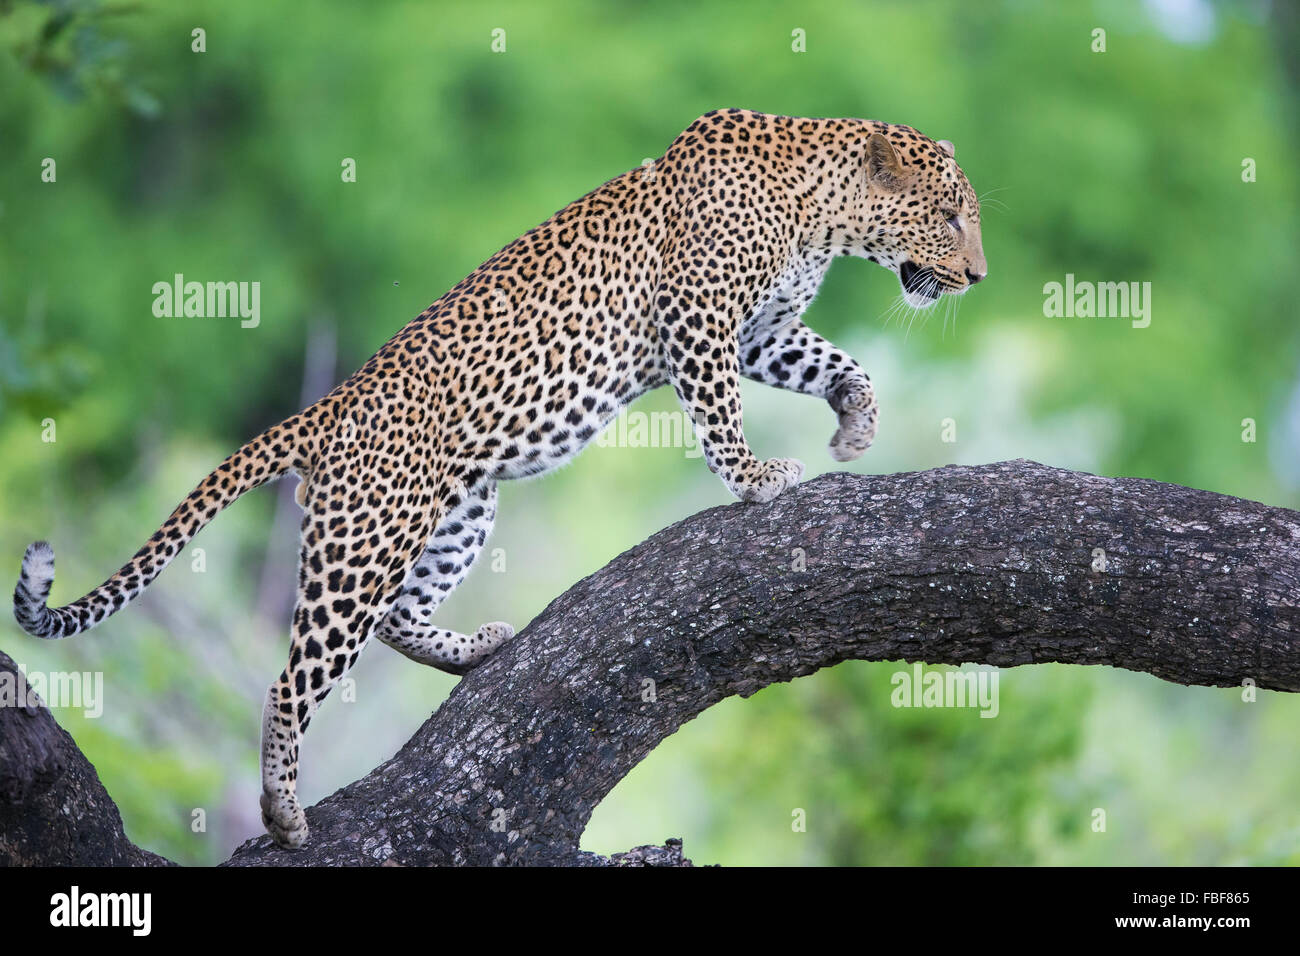 Leopard walking along branch Stock Photo